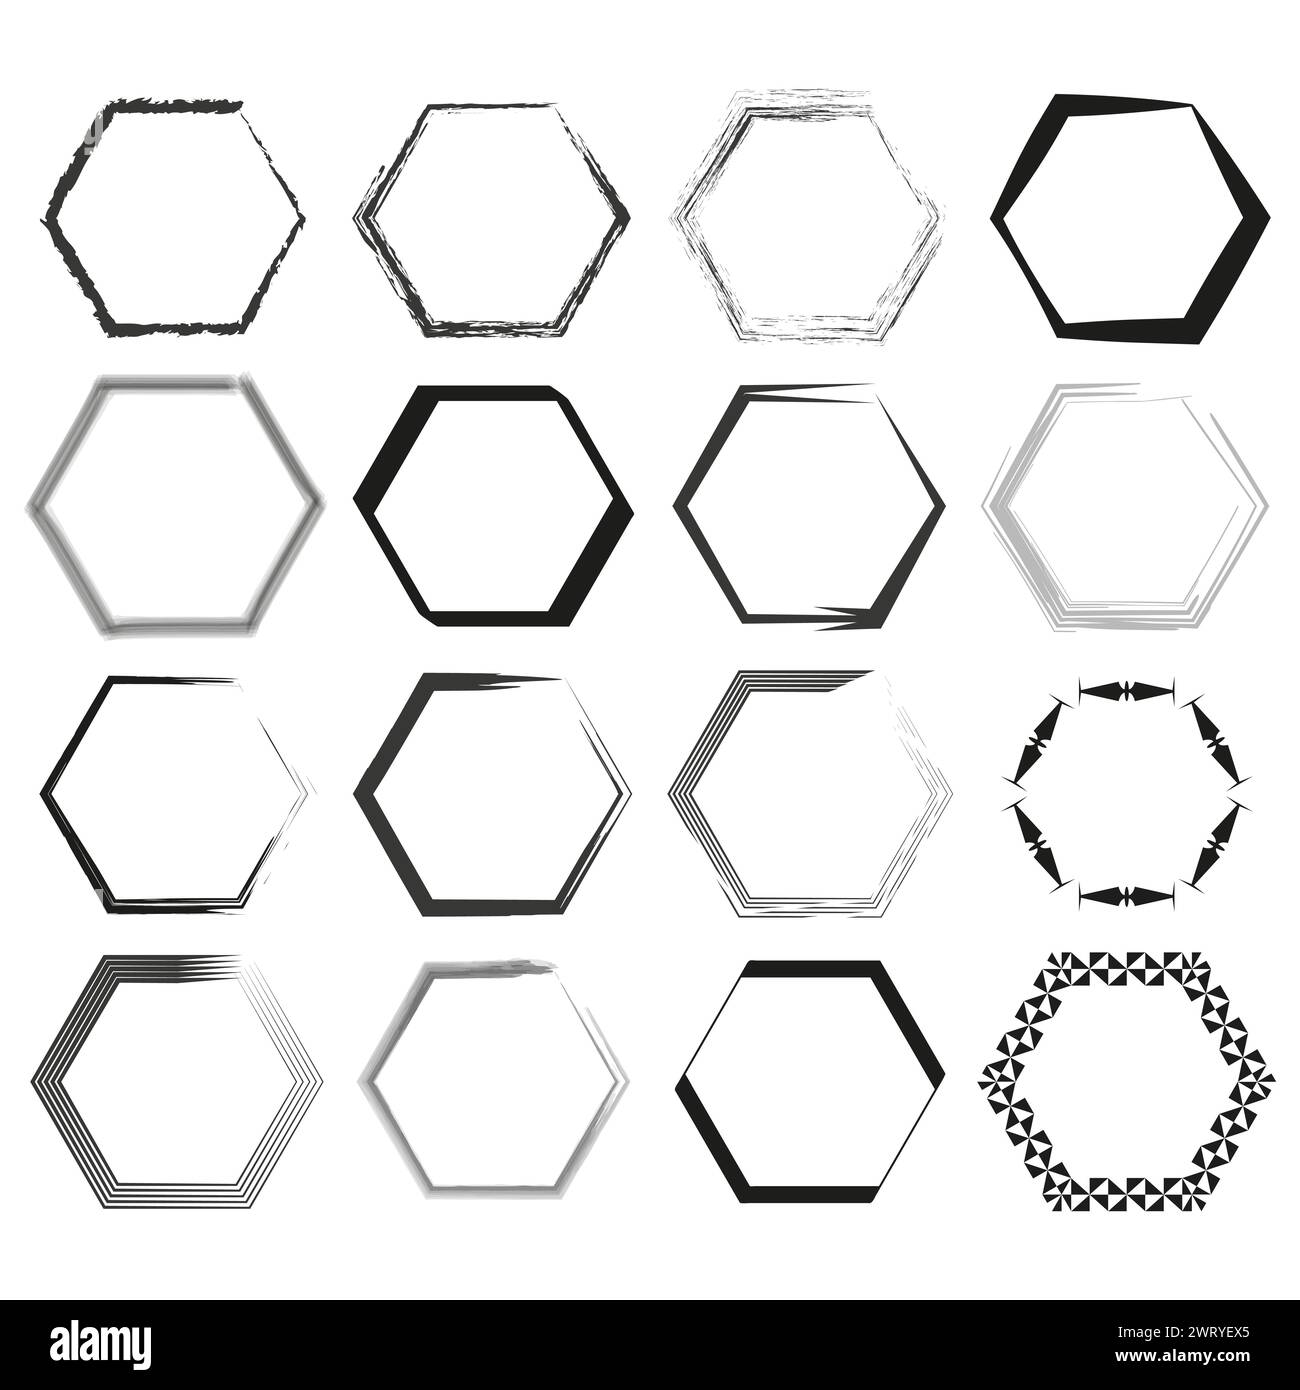 Un assortiment de cadres hexagonaux dans différents styles et coups de pinceau. Illustration vectorielle. SPE 10. Illustration de Vecteur